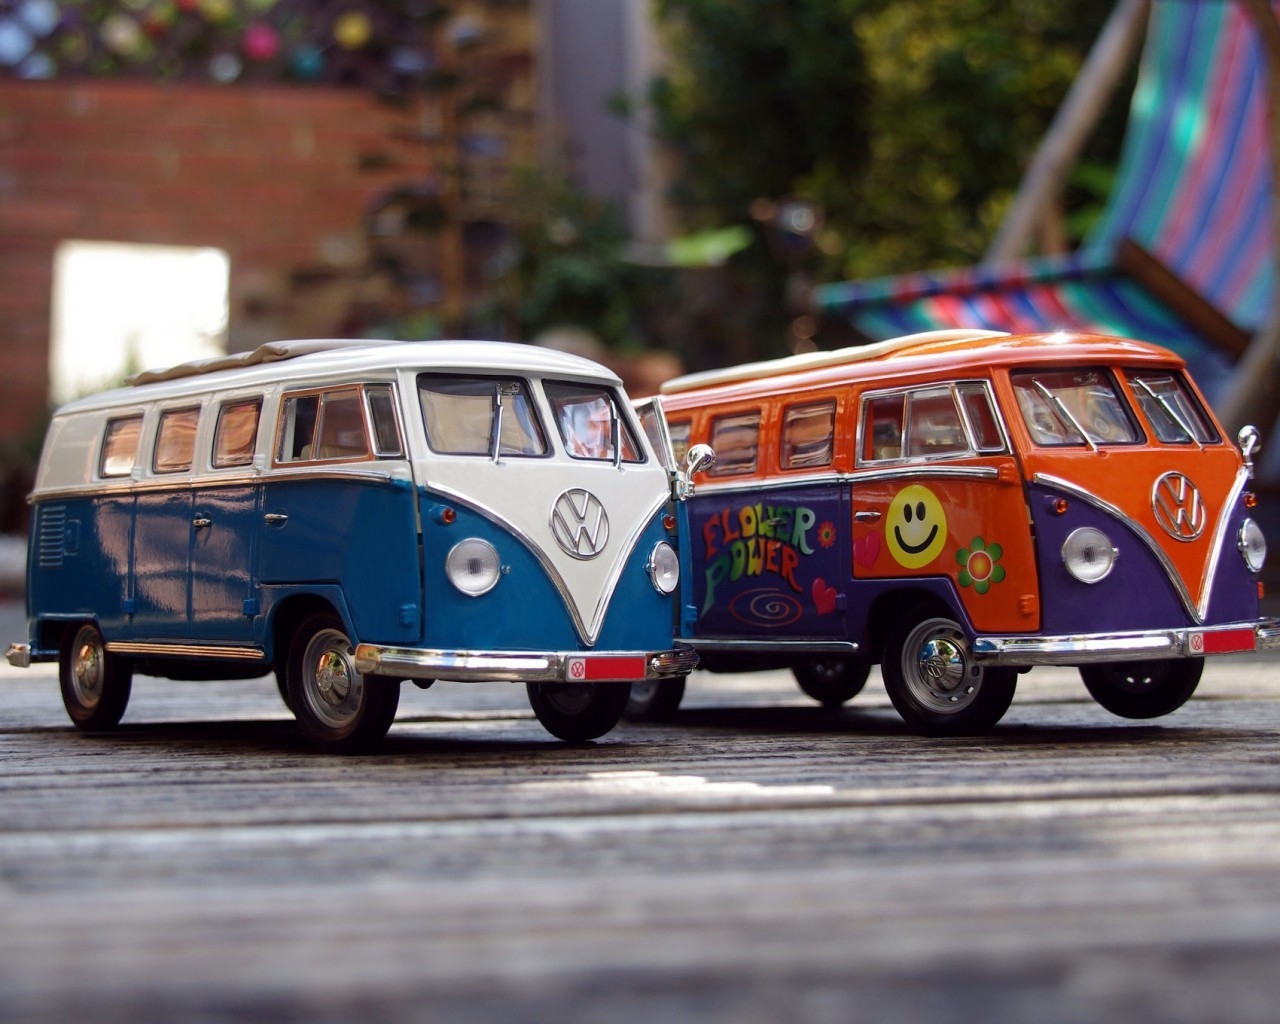 VW Campervans for 1280 x 1024 resolution